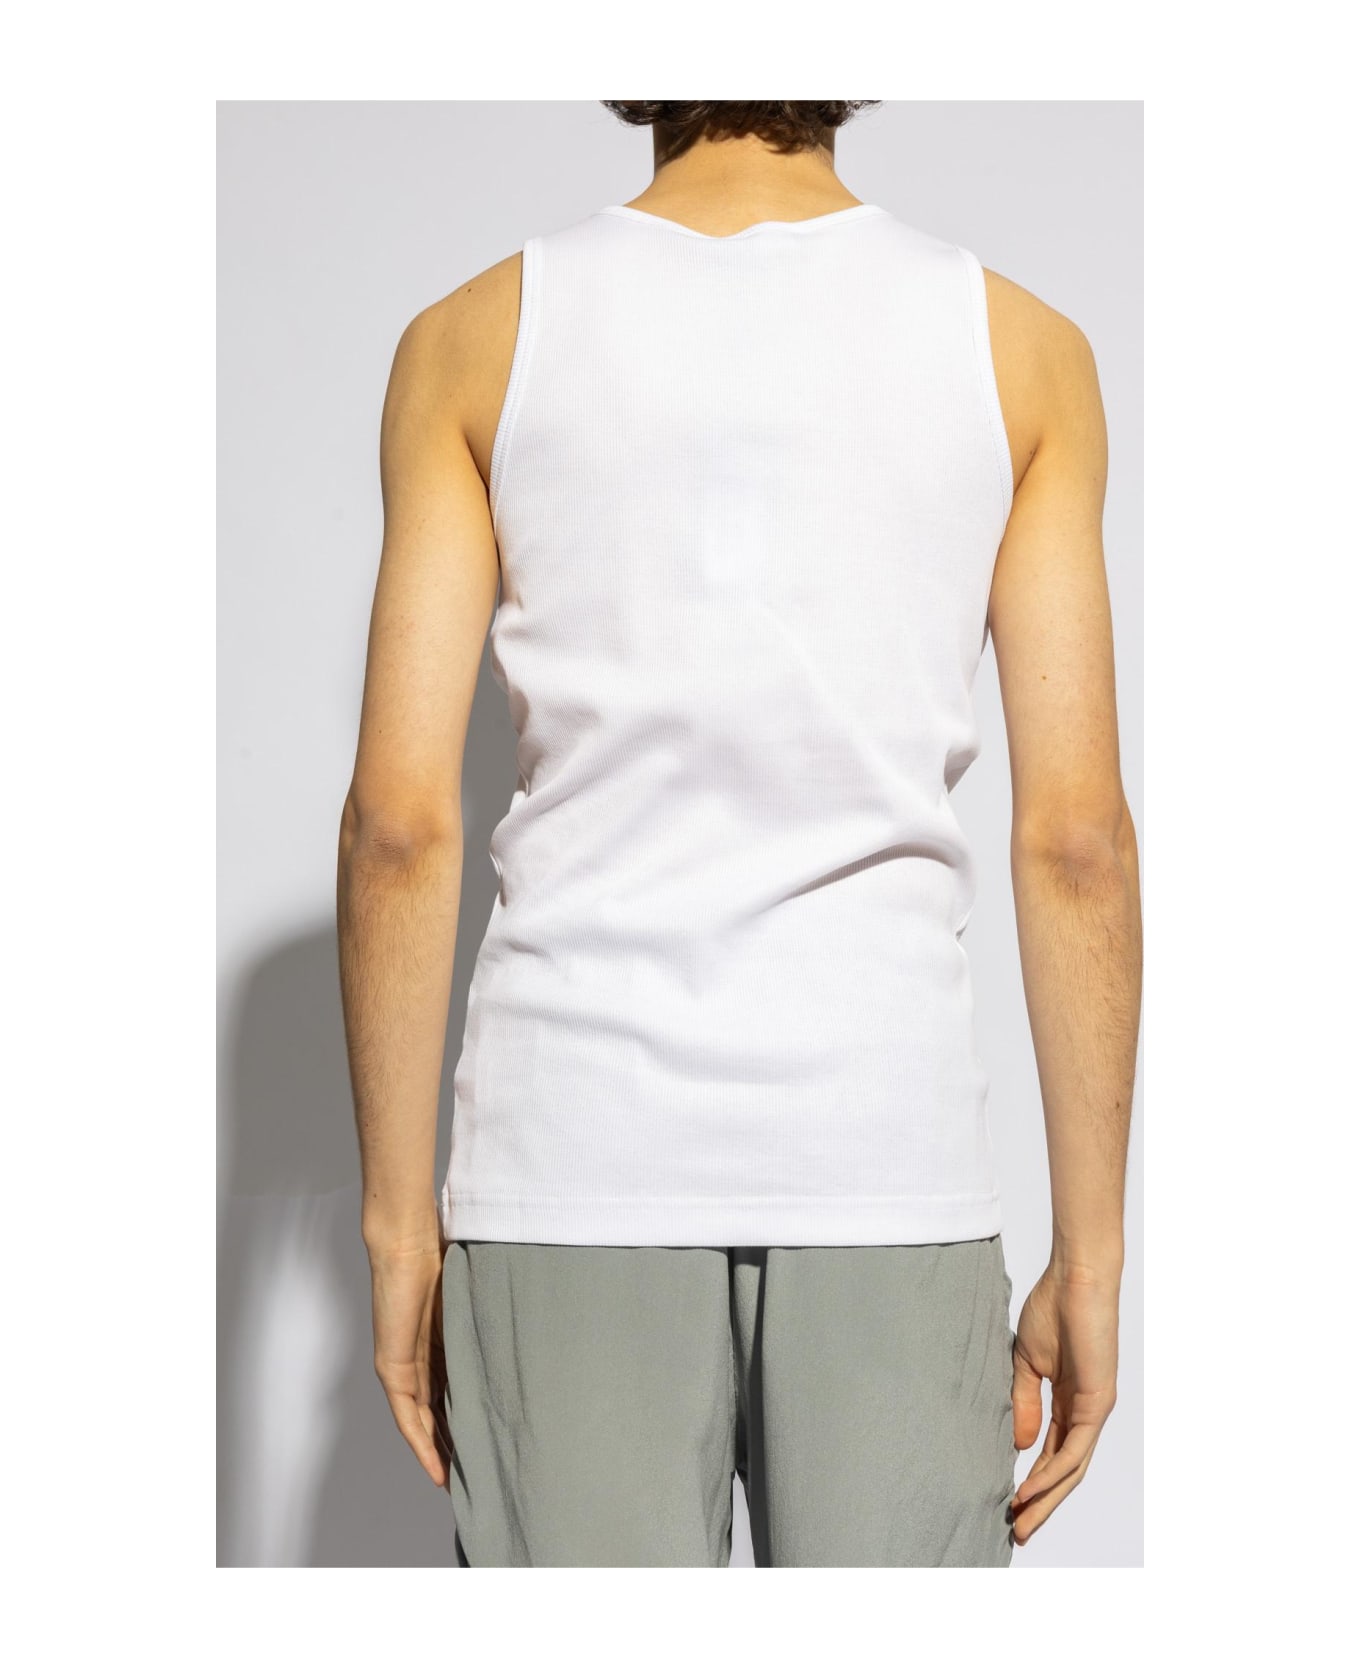 Dolce & Gabbana T-shirt - Optical white